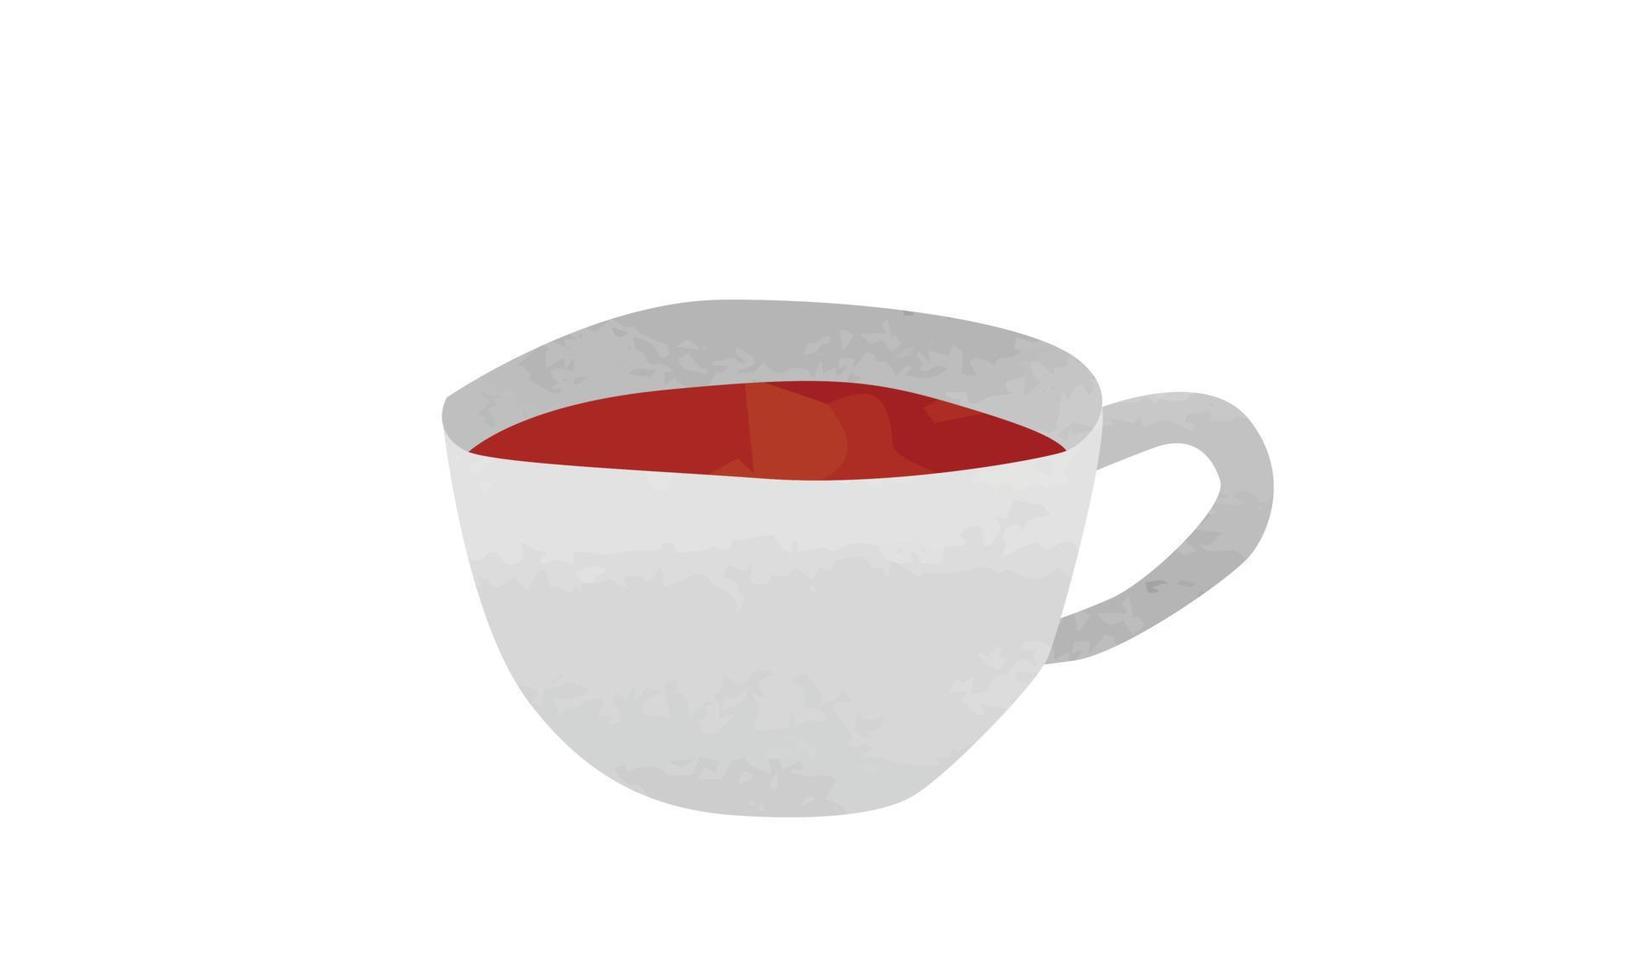 weiße tasse schwarzen kaffee clipart. einfache Kaffeetasse-Aquarellart-Vektorillustration lokalisiert auf weißem Hintergrund. niedliche teetasse cartoon handgezeichnete gekritzelart. die Kaffee-Doodle-Zeichnung vektor